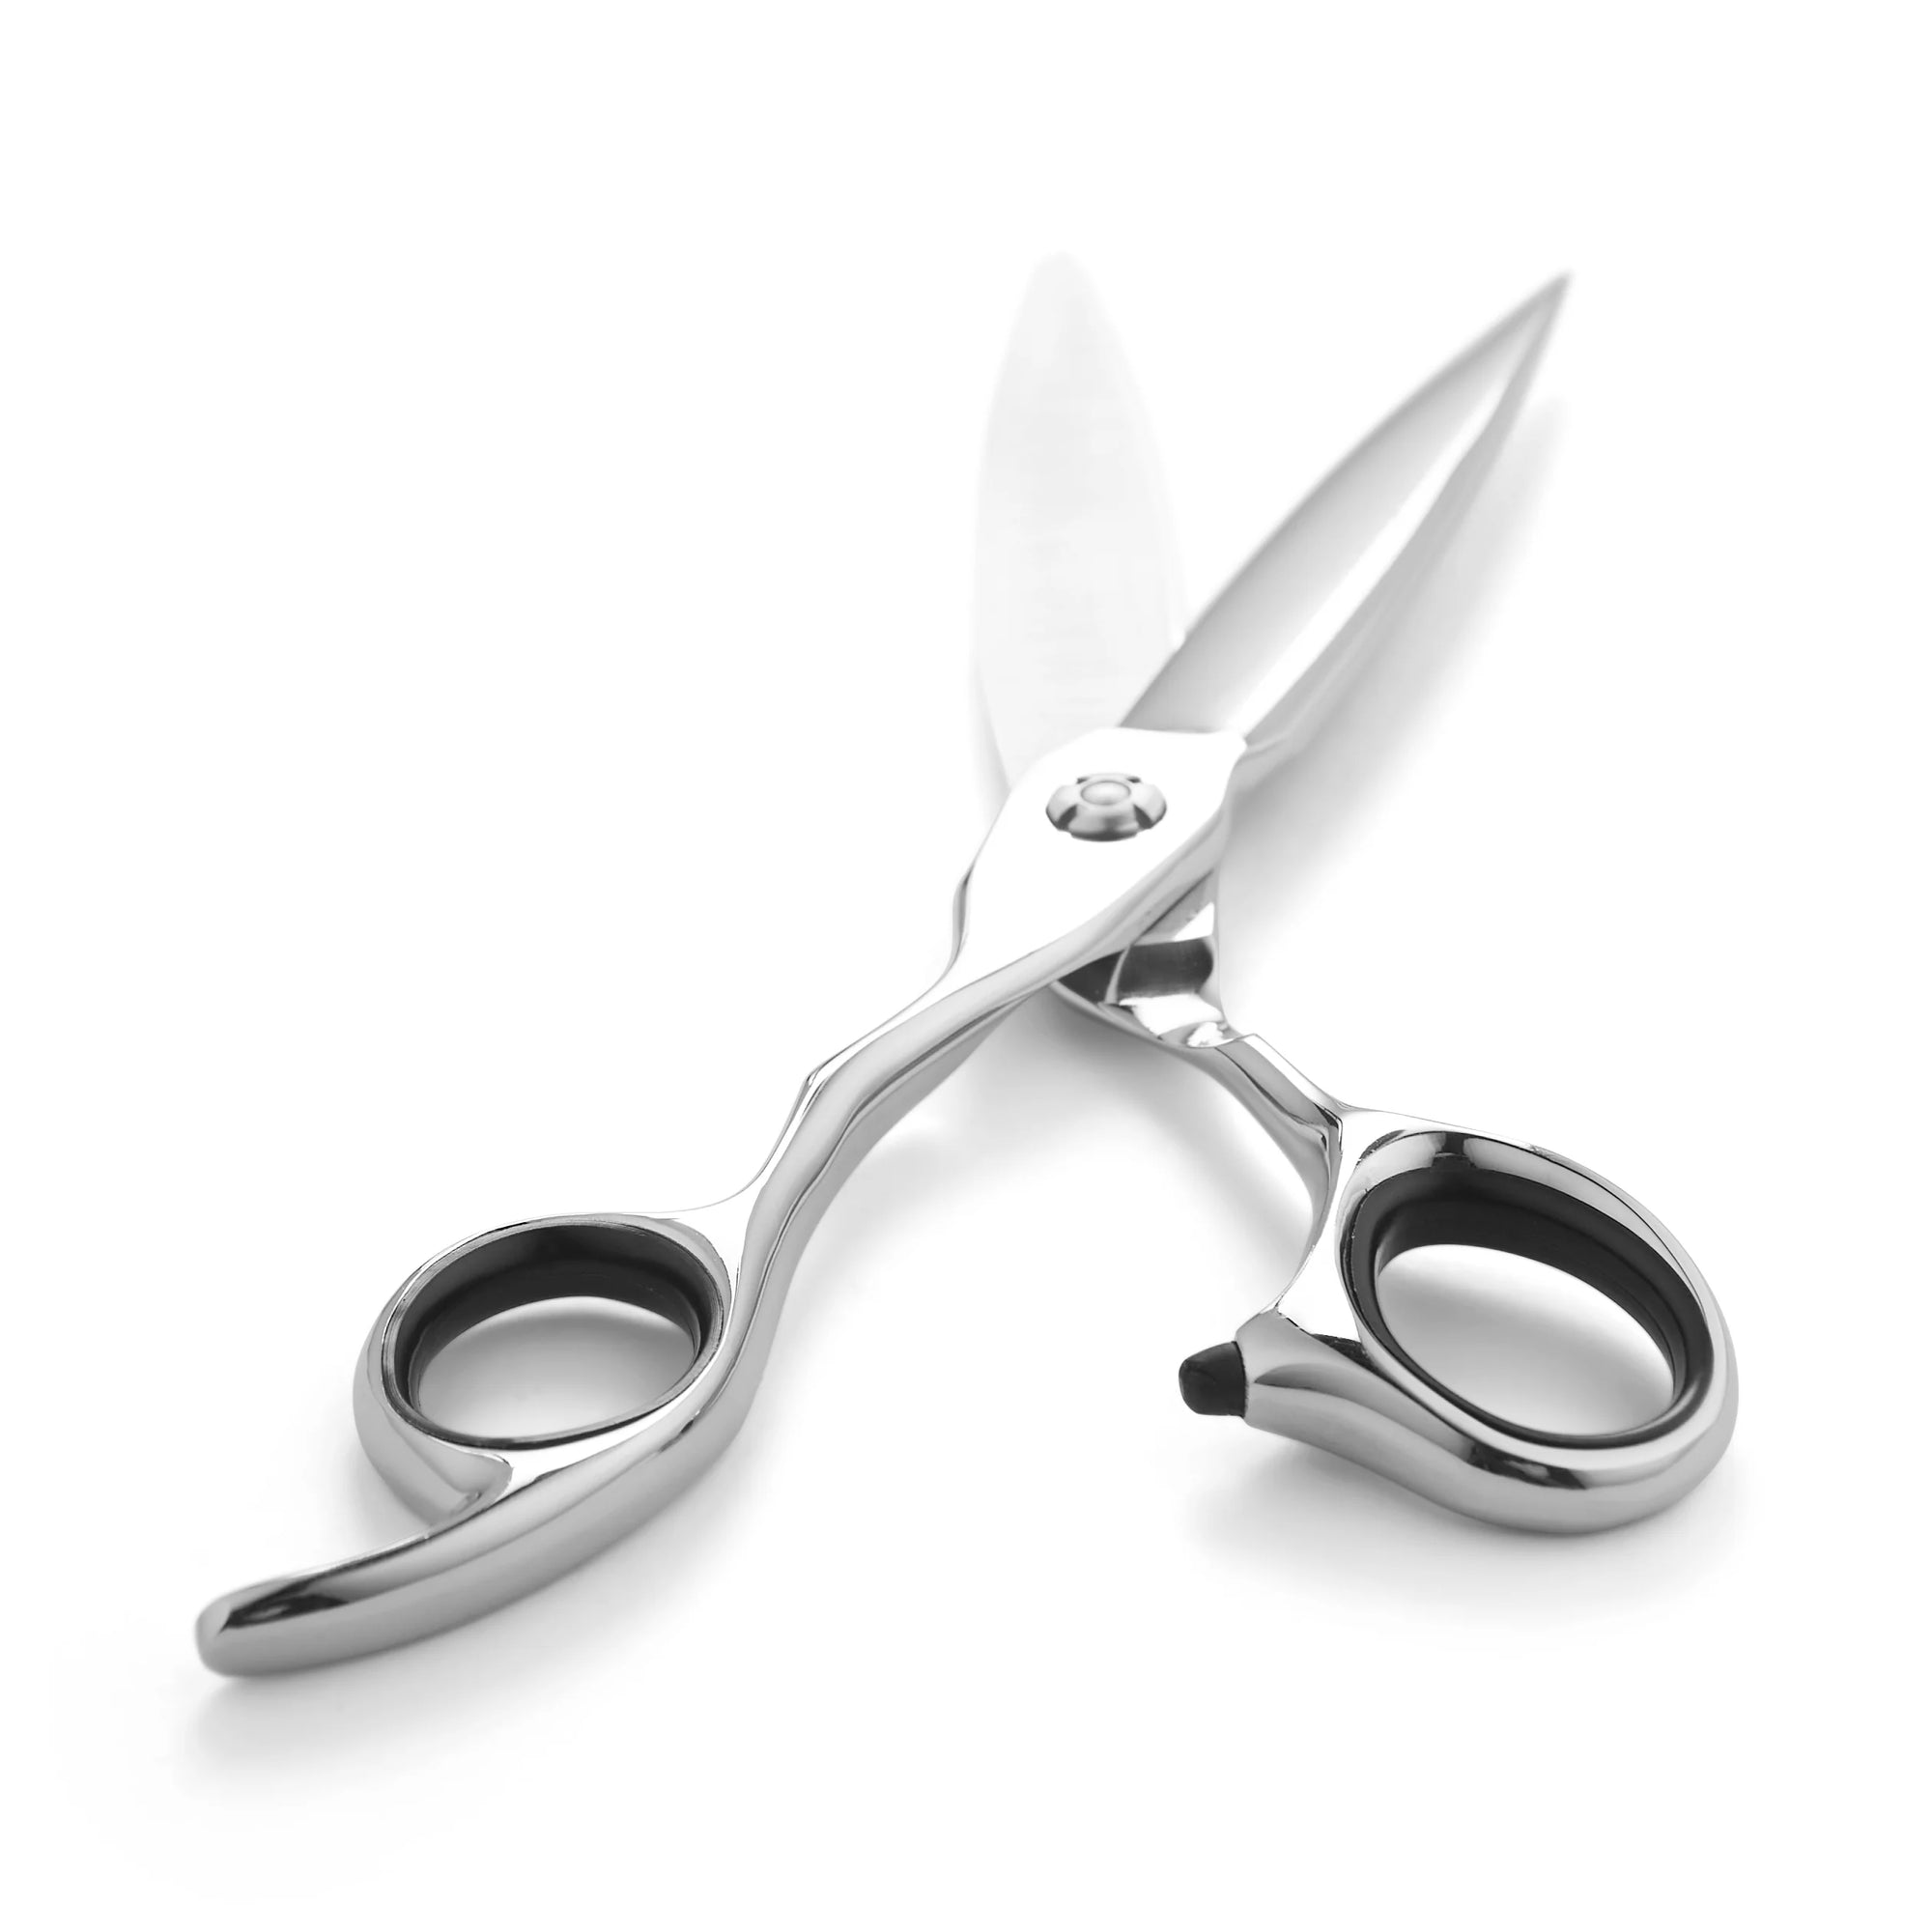 Matsui VG10 Sword - Silver Hair Scissors (7014376996925)